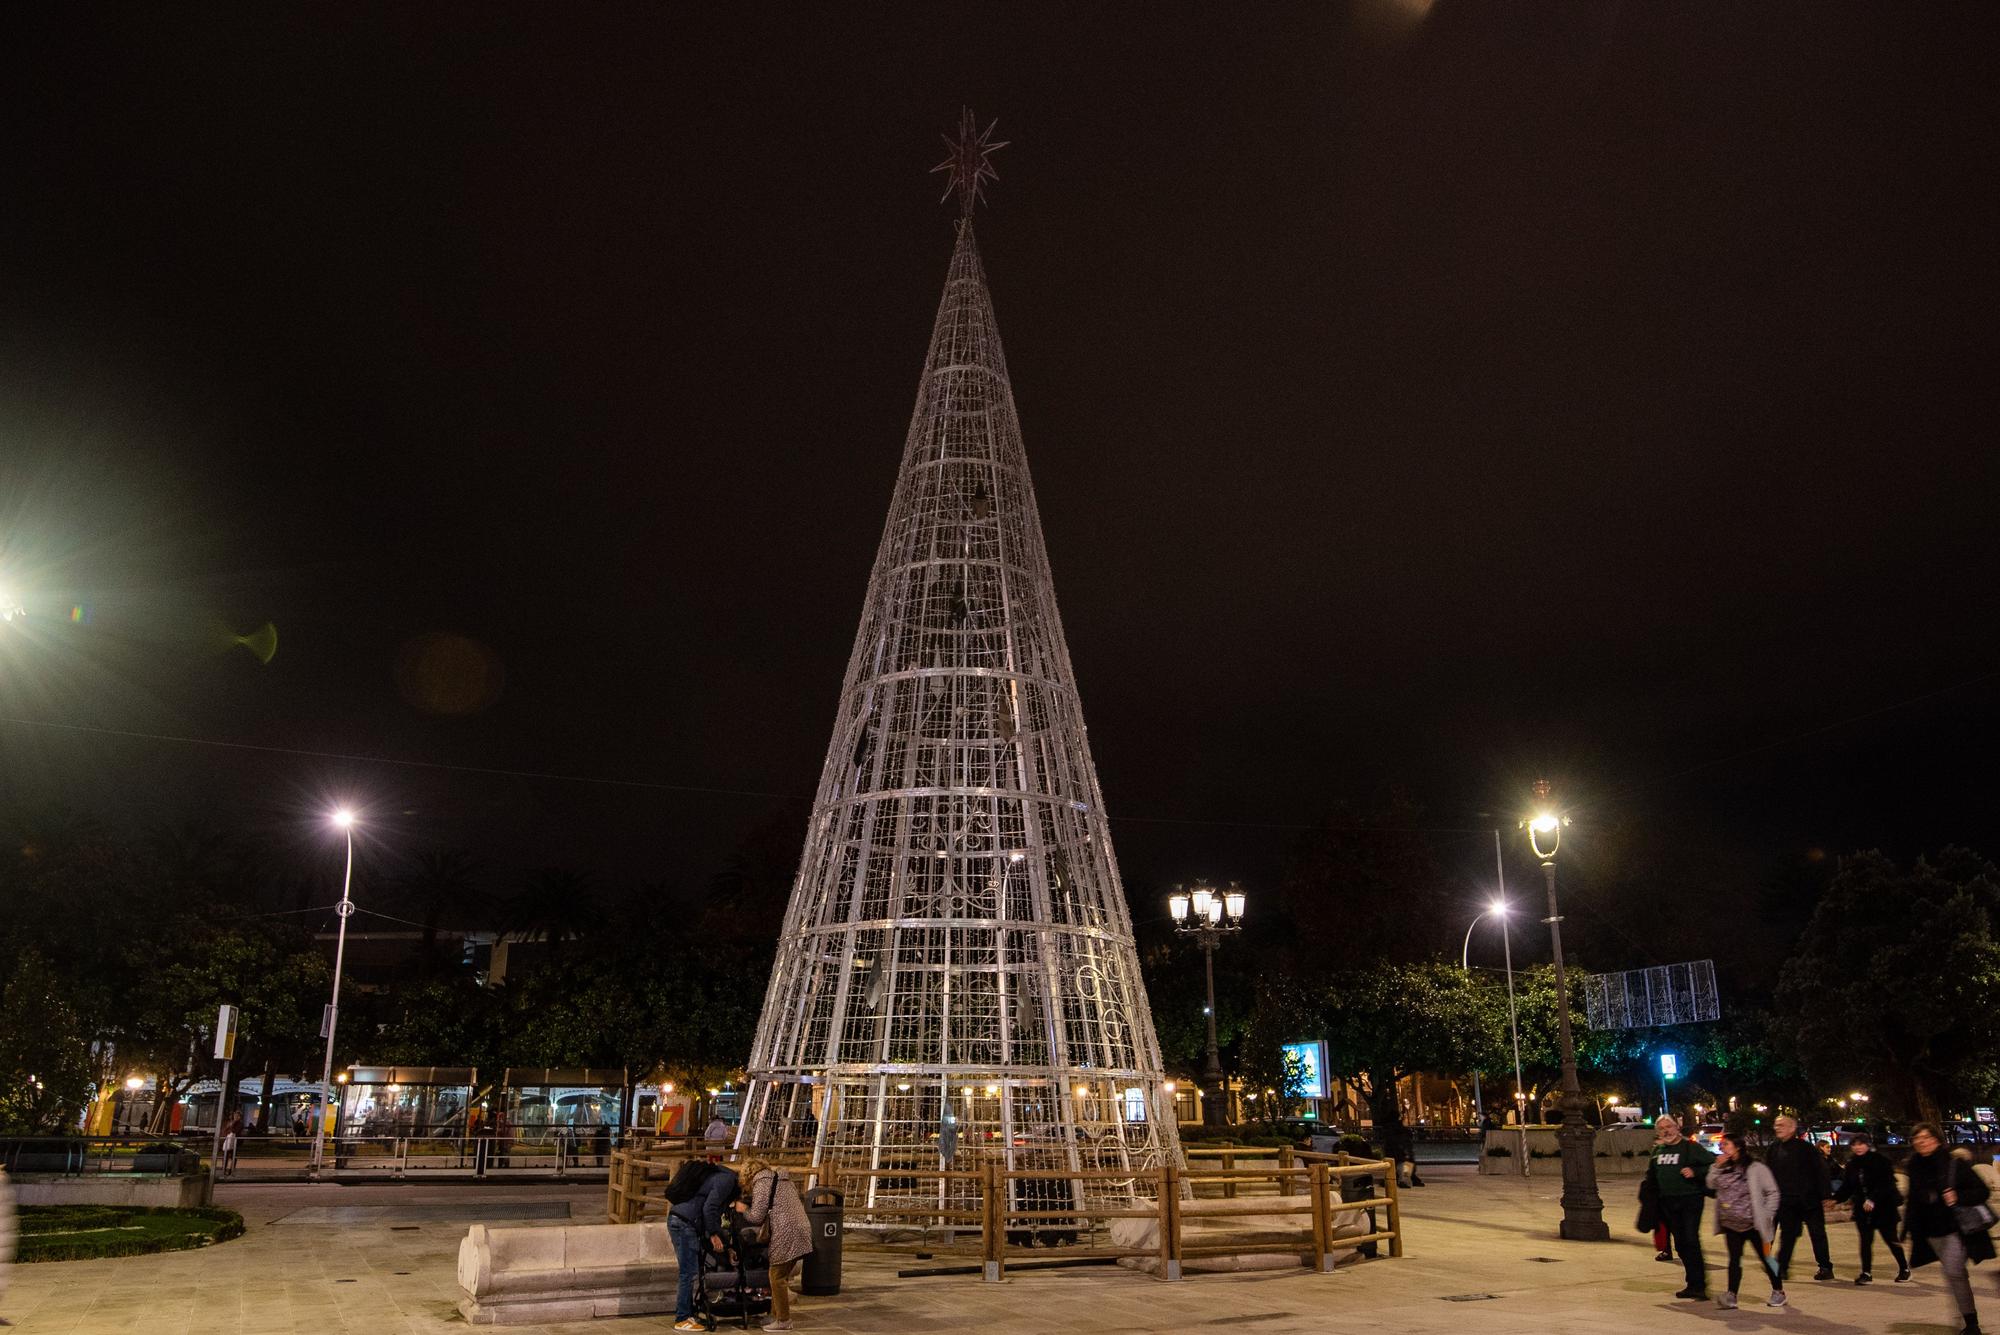 El árbol y la bola, preparados para la Navidad 2022 en A Coruña